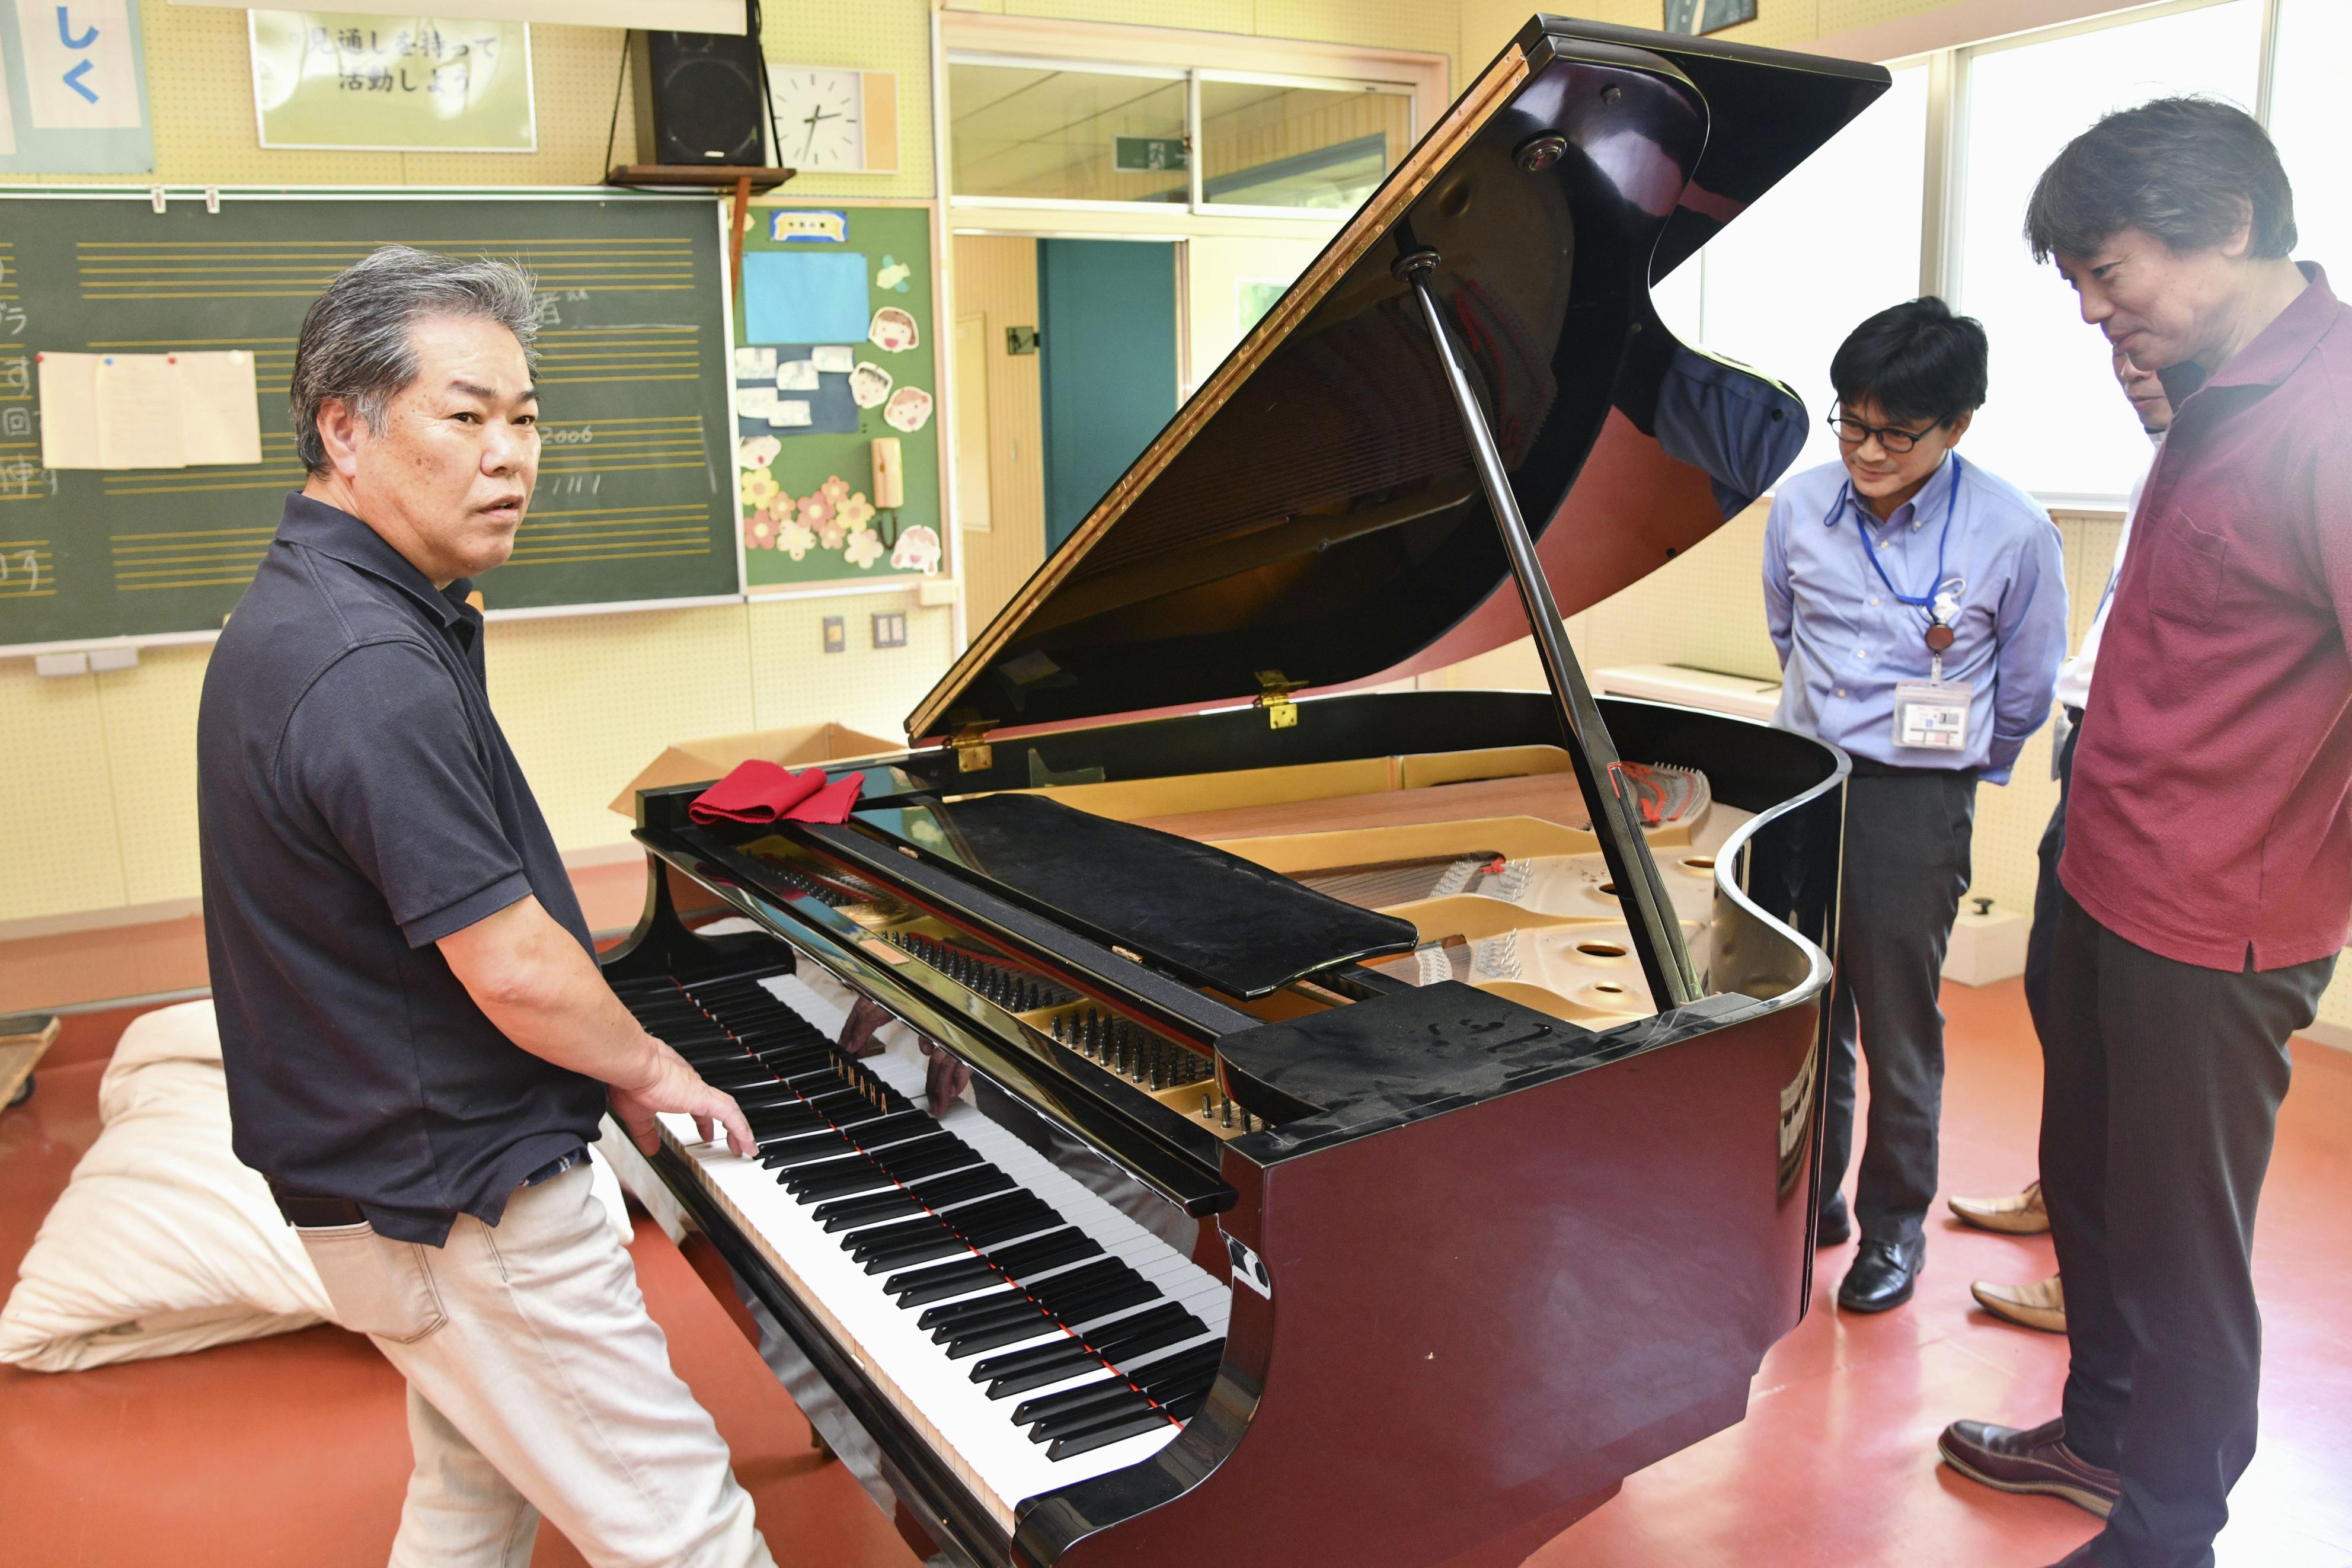 旧避難区域のピアノ再生へ 福島で官民組織が企画 - 産経ニュース